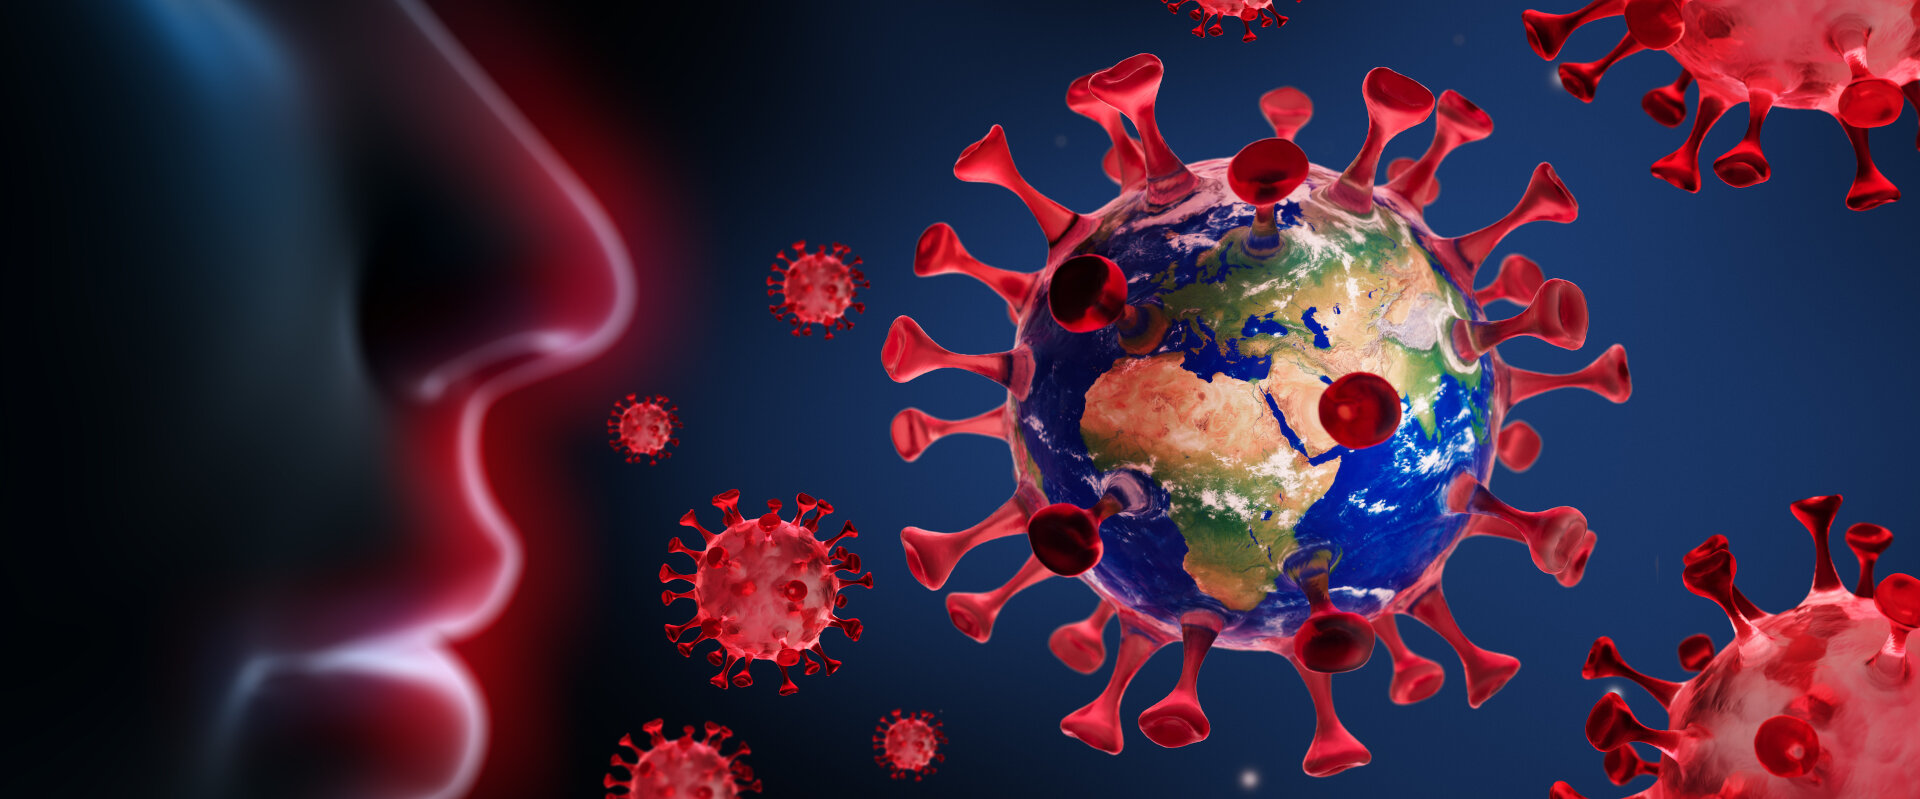 na obrazku znajduje się twarz człowieka otoczona graficznym obrazem wirusa  czerwone kulki z wypustkami 